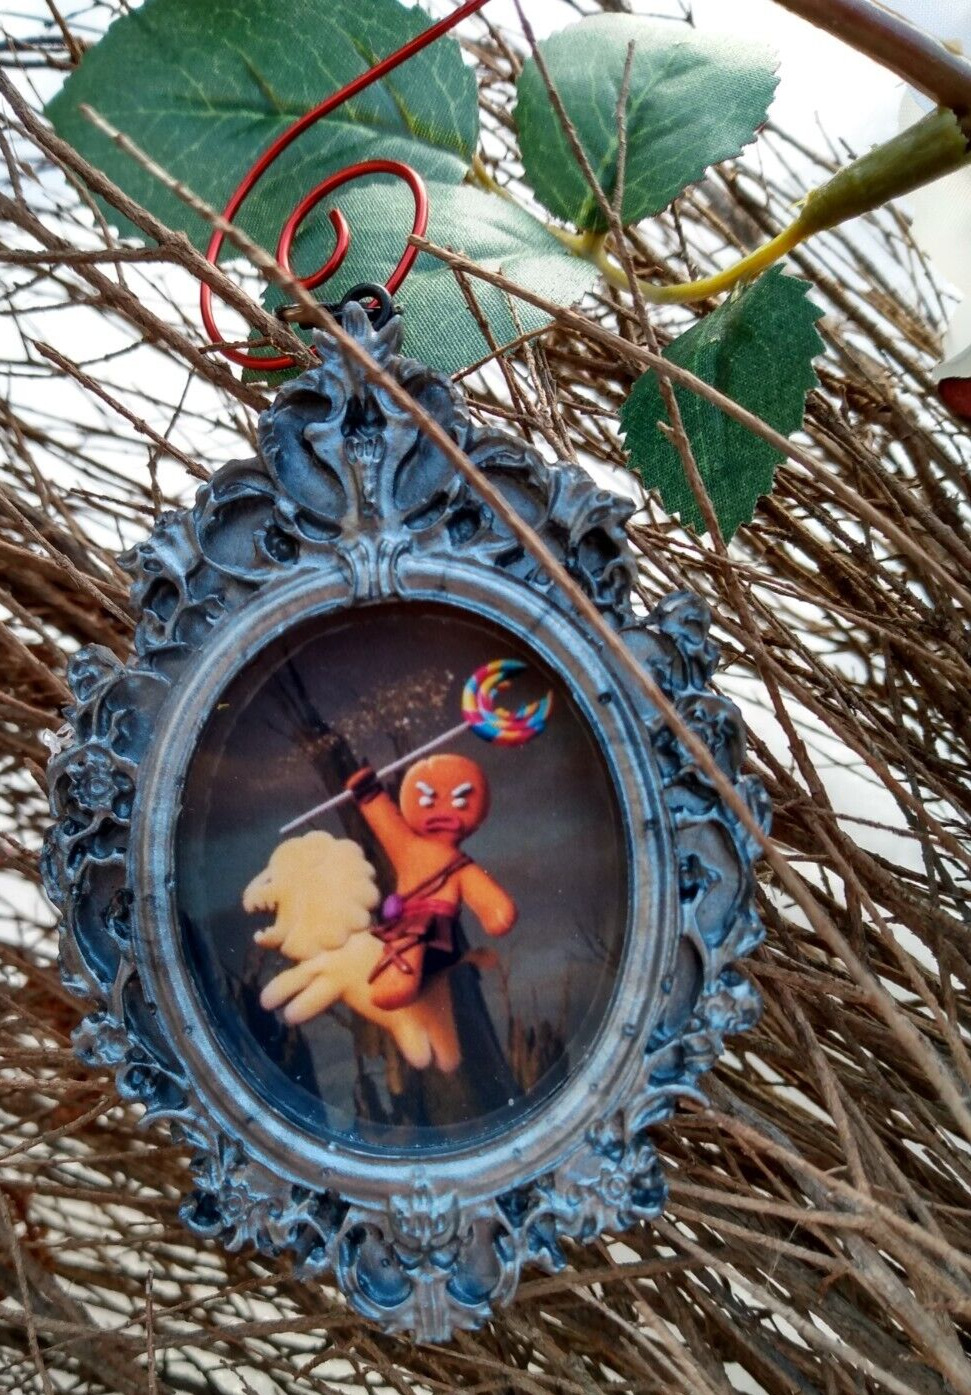 Shrek Gingerbread Cookie Funny Keepsake Ornament Humorous Christmas